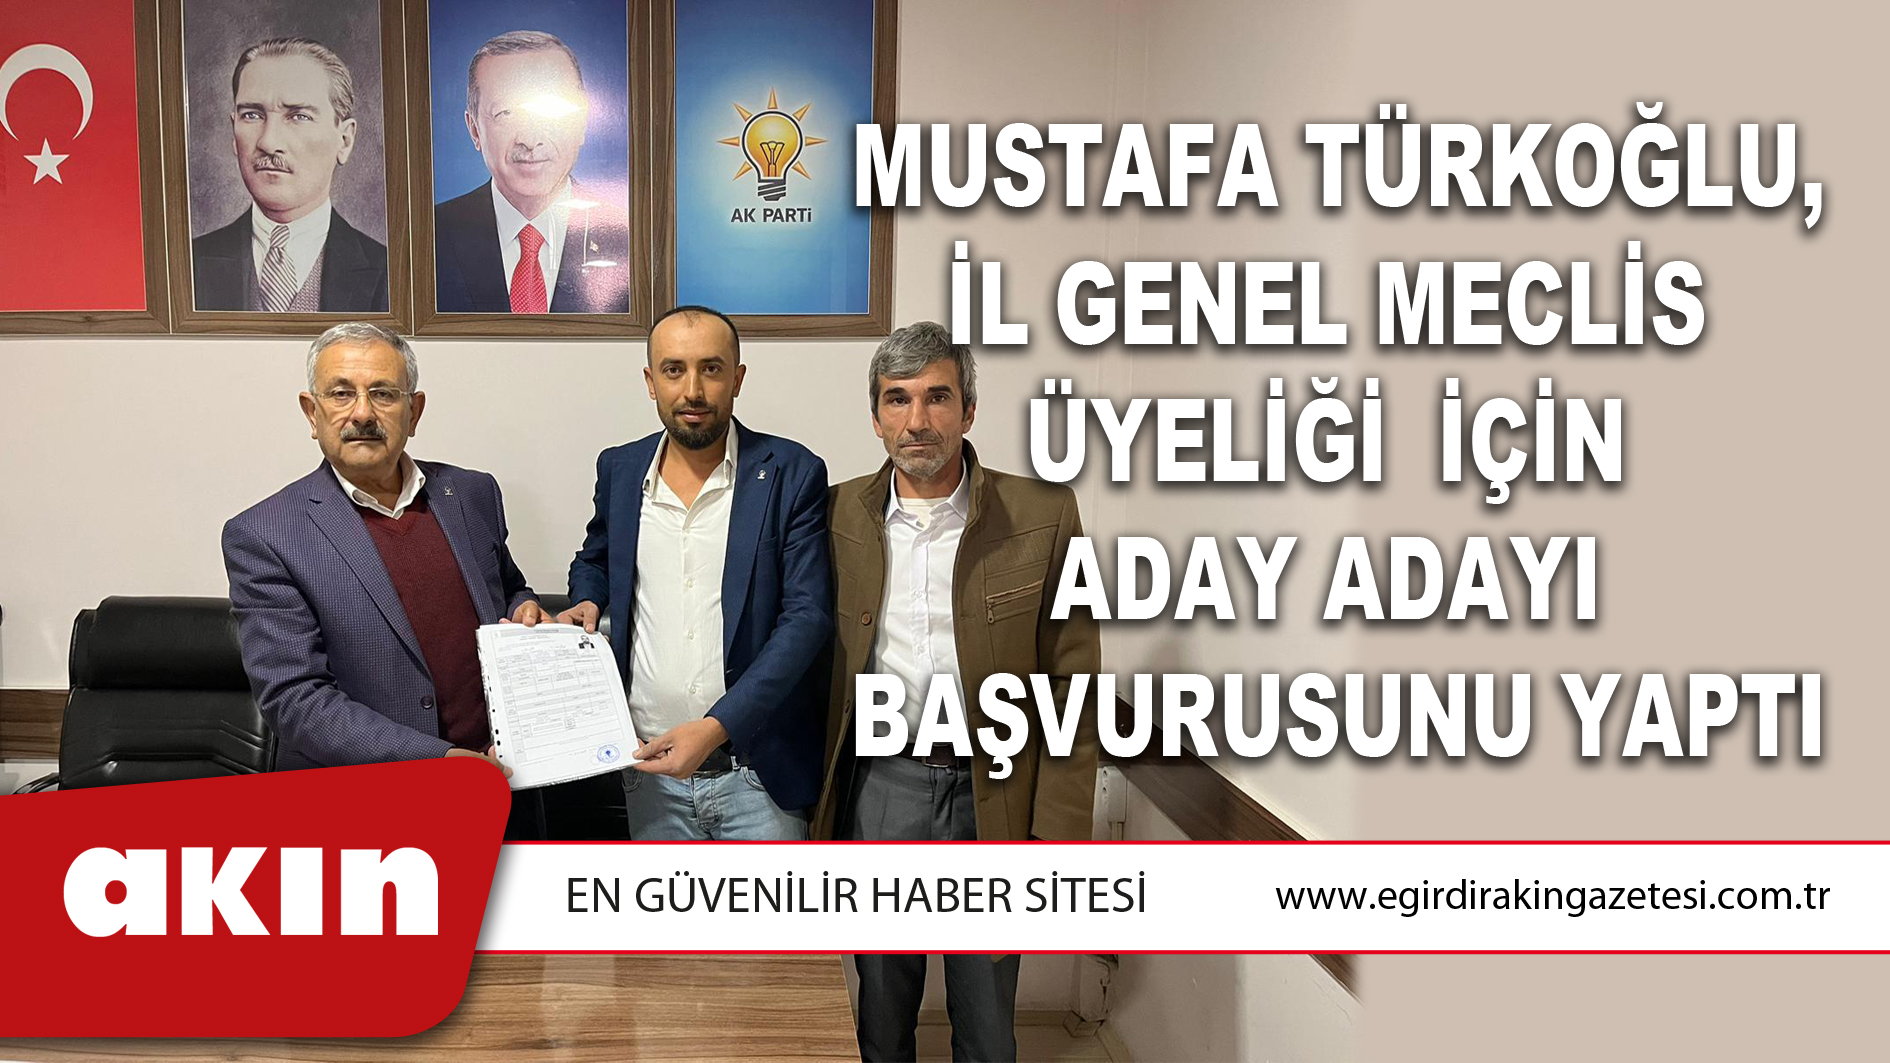 Mustafa Türkoğlu, İl Genel Meclis Üyeliği  İçin  Aday Adayı Başvurusunu Yaptı